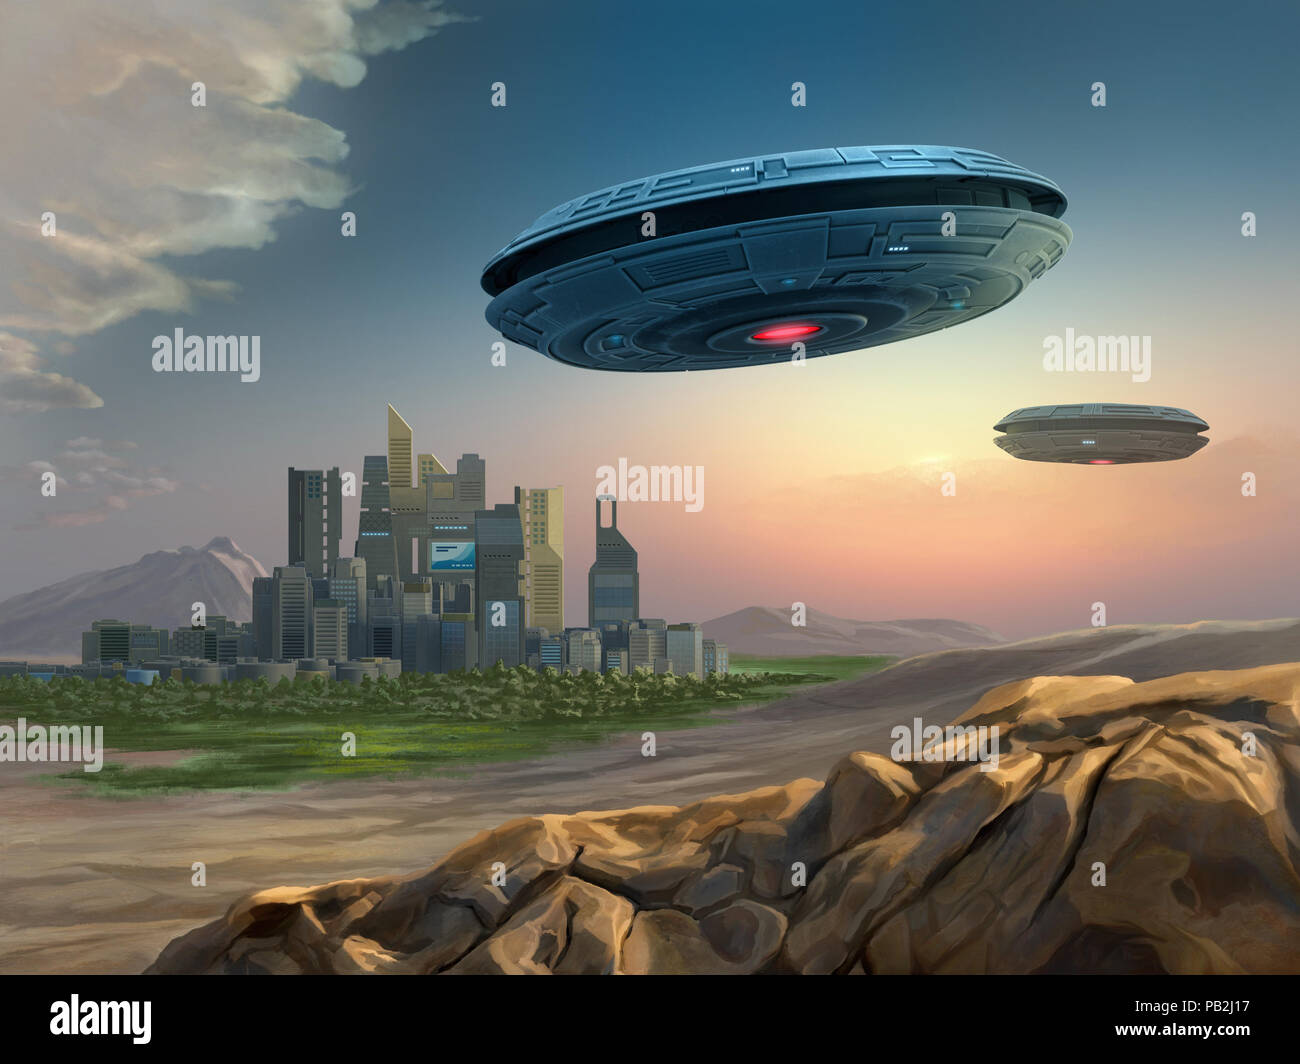 Naves espaciales alienígenas acercándose a una ciudad. Ilustración Digital. Foto de stock